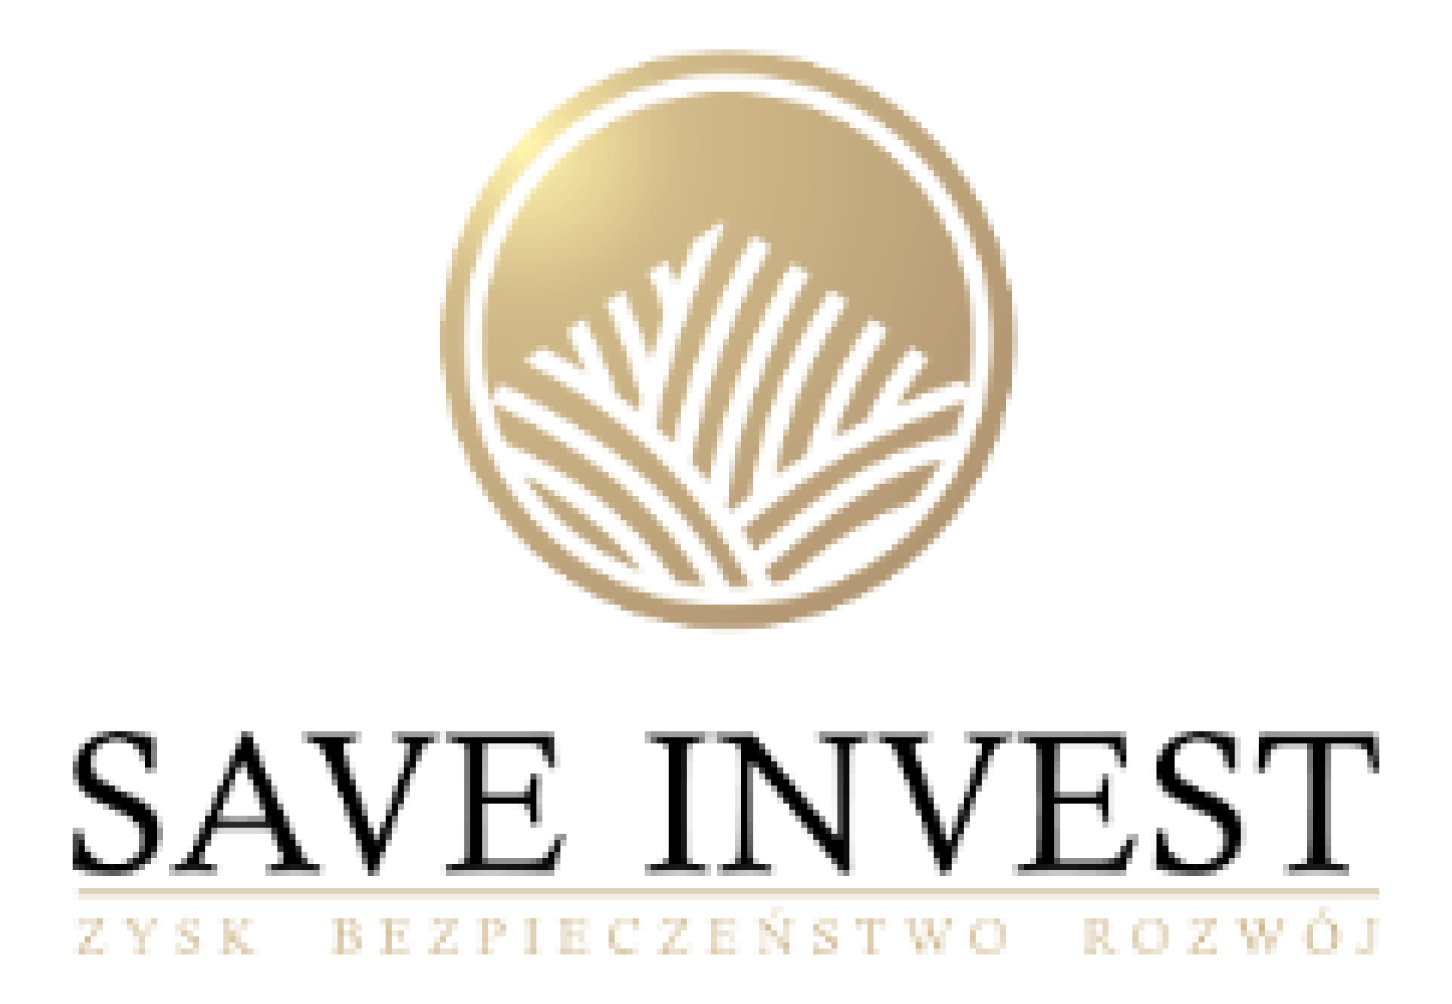  logo saveinvest